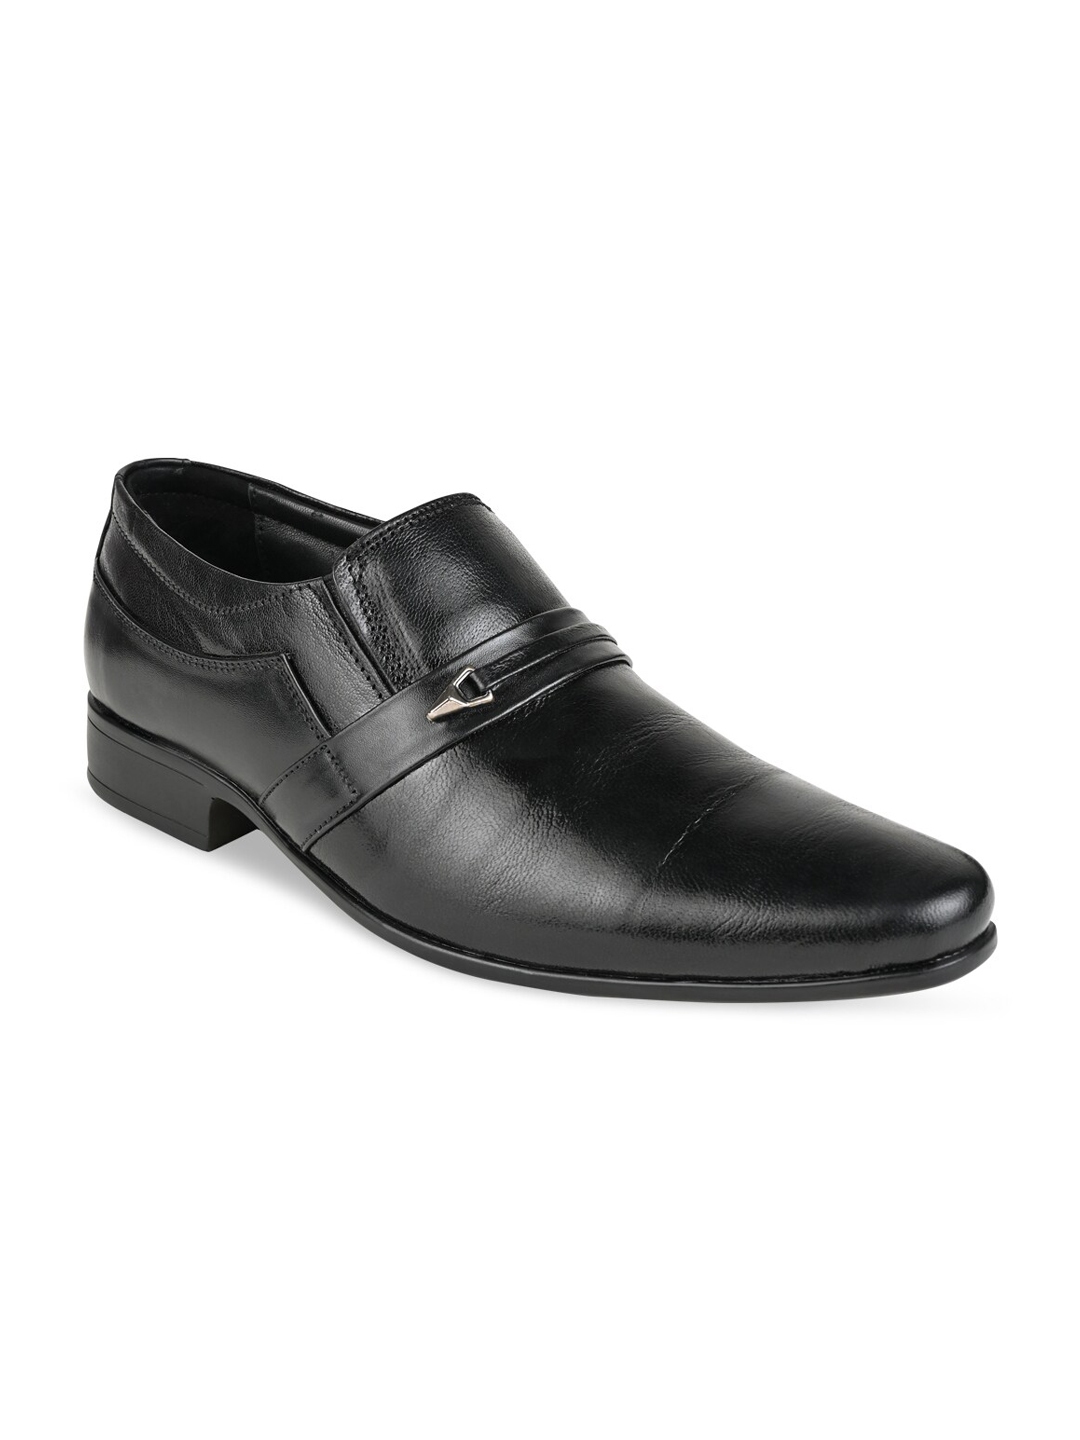 Buy Regal Men Black Solid Formal Slip On Shoes - Formal Shoes for Men ...